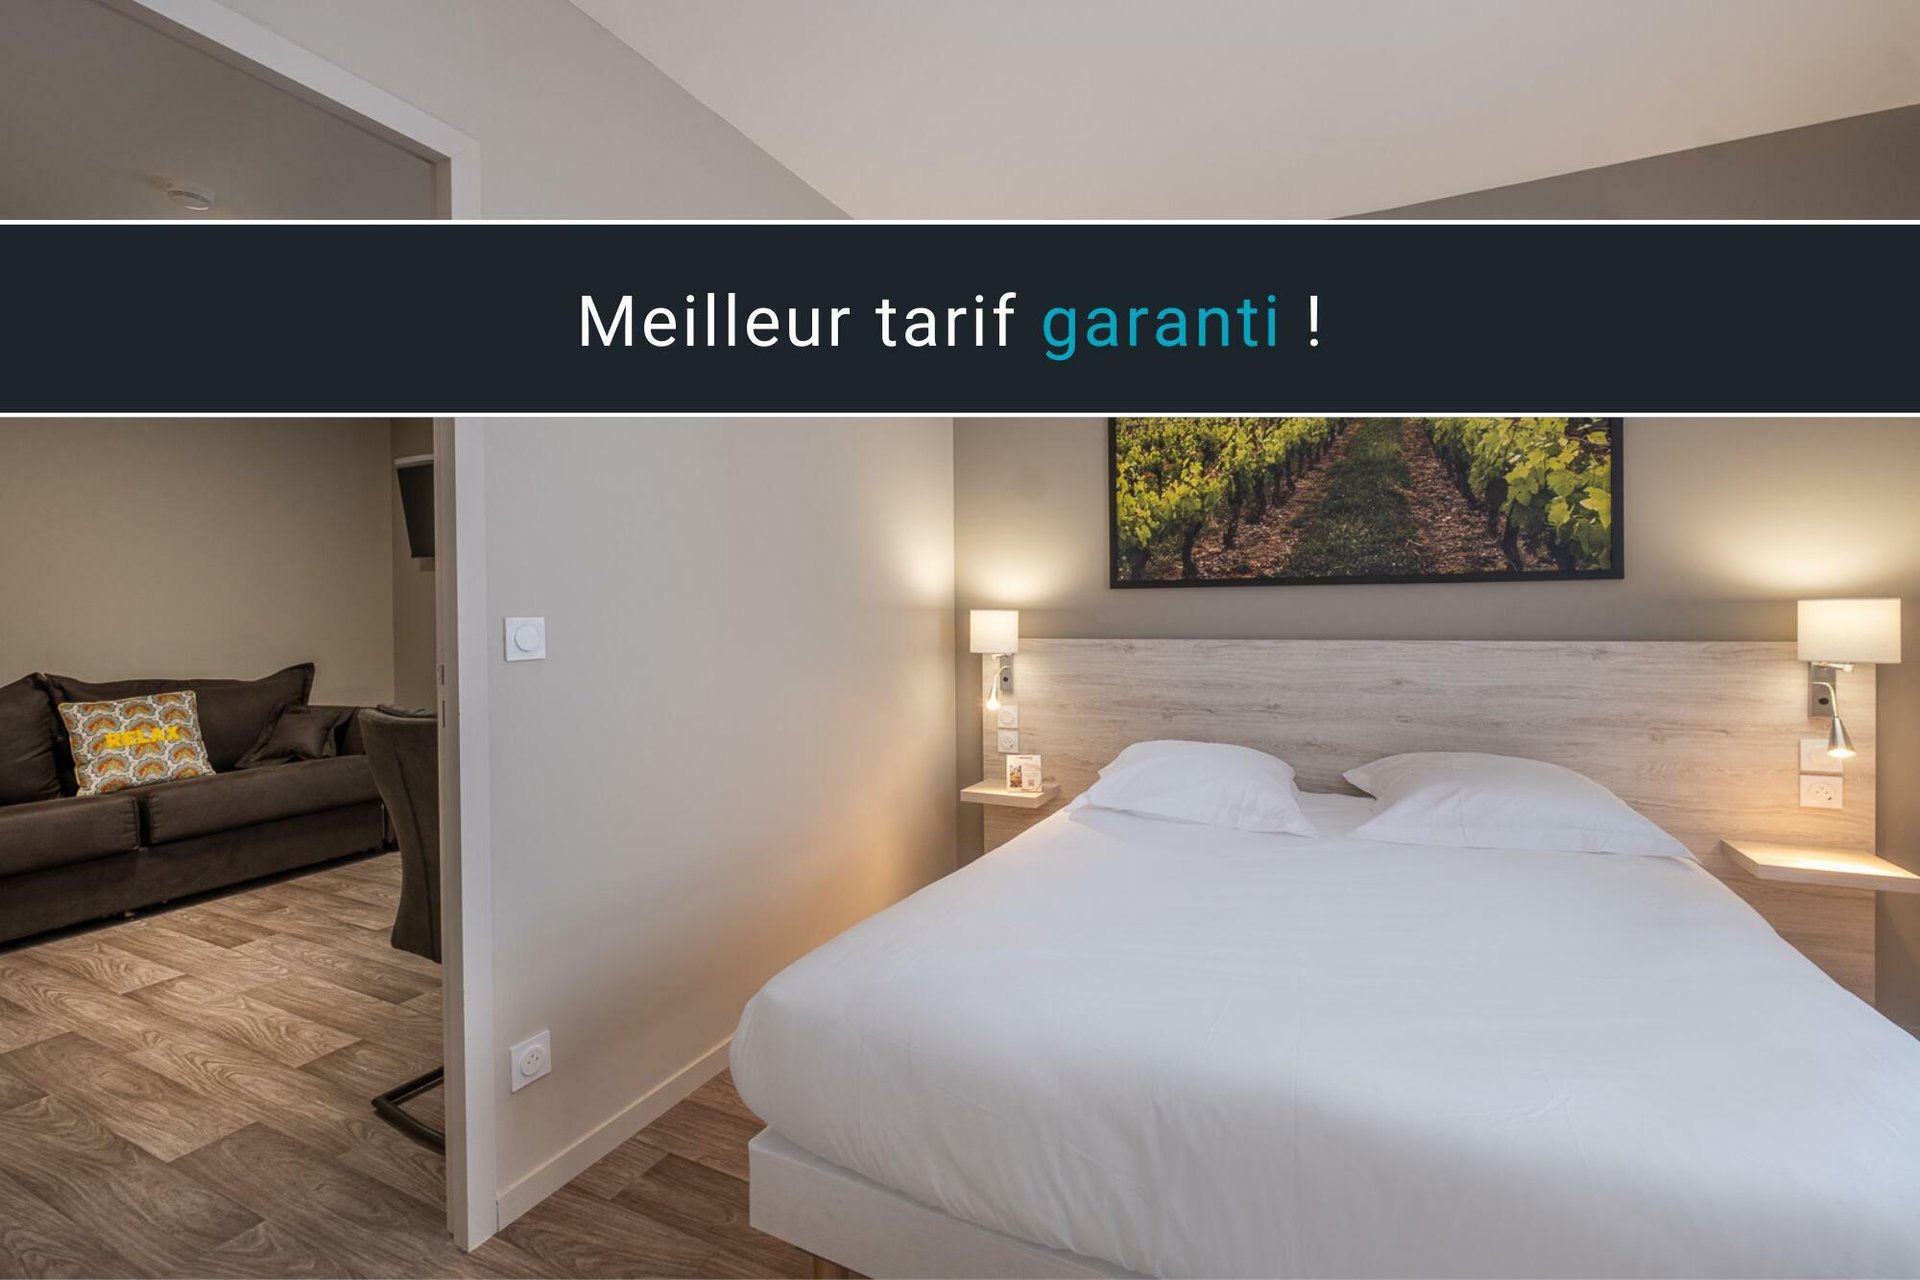 Hotel*** Le Relais des Deux Mers | Lot-et-Garonne | Offre Soirée étape | Clientèle affaire